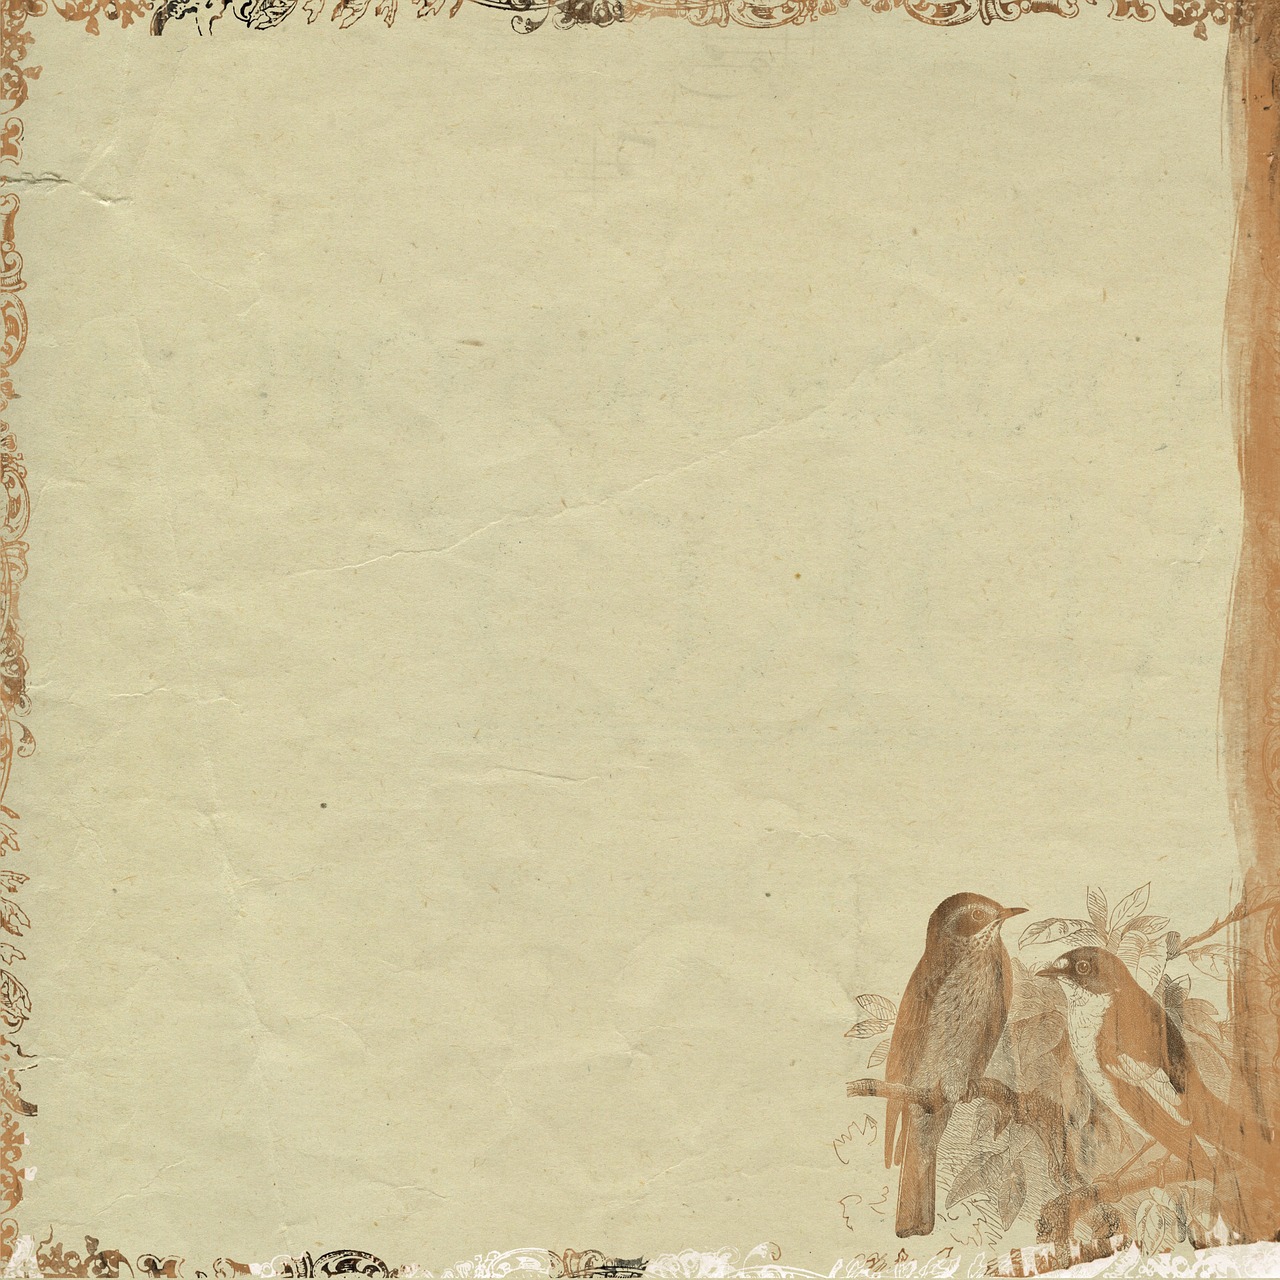 Old parchment paper, free public